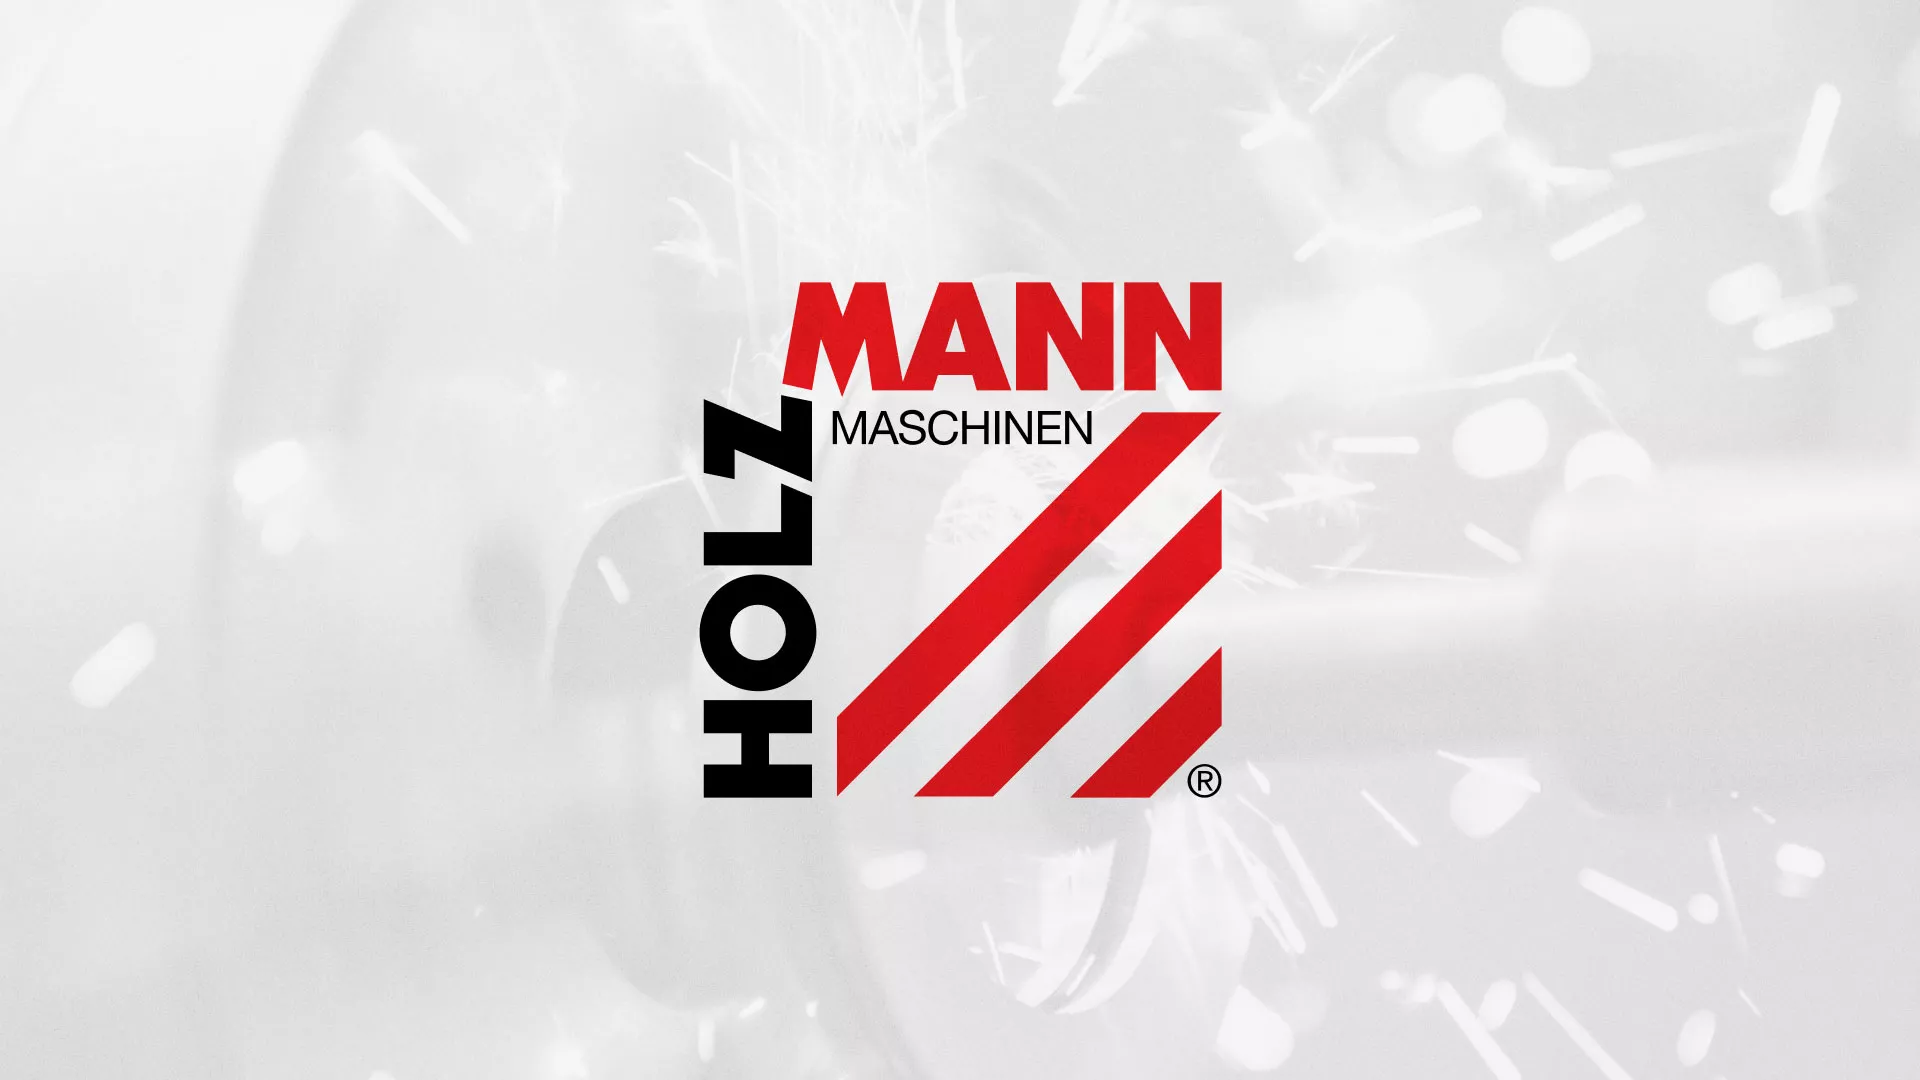 Создание сайта компании «HOLZMANN Maschinen GmbH» в Вельске